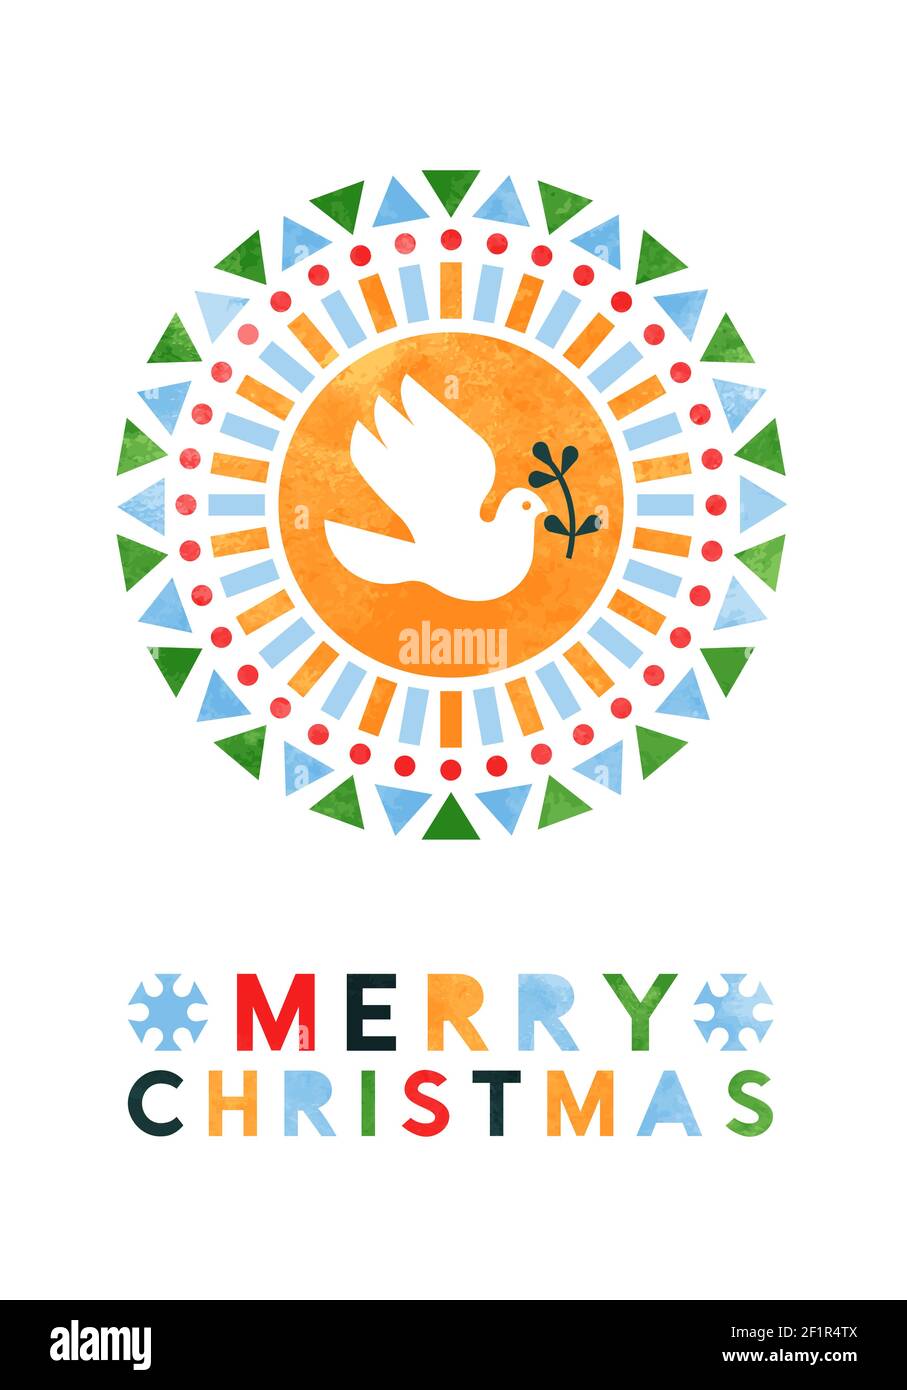 Allegro biglietto di auguri di Natale illustrazione di pace colomba uccello con astratte forme geometriche folk in tessuto acquerello. Design scandinavo moderno Illustrazione Vettoriale